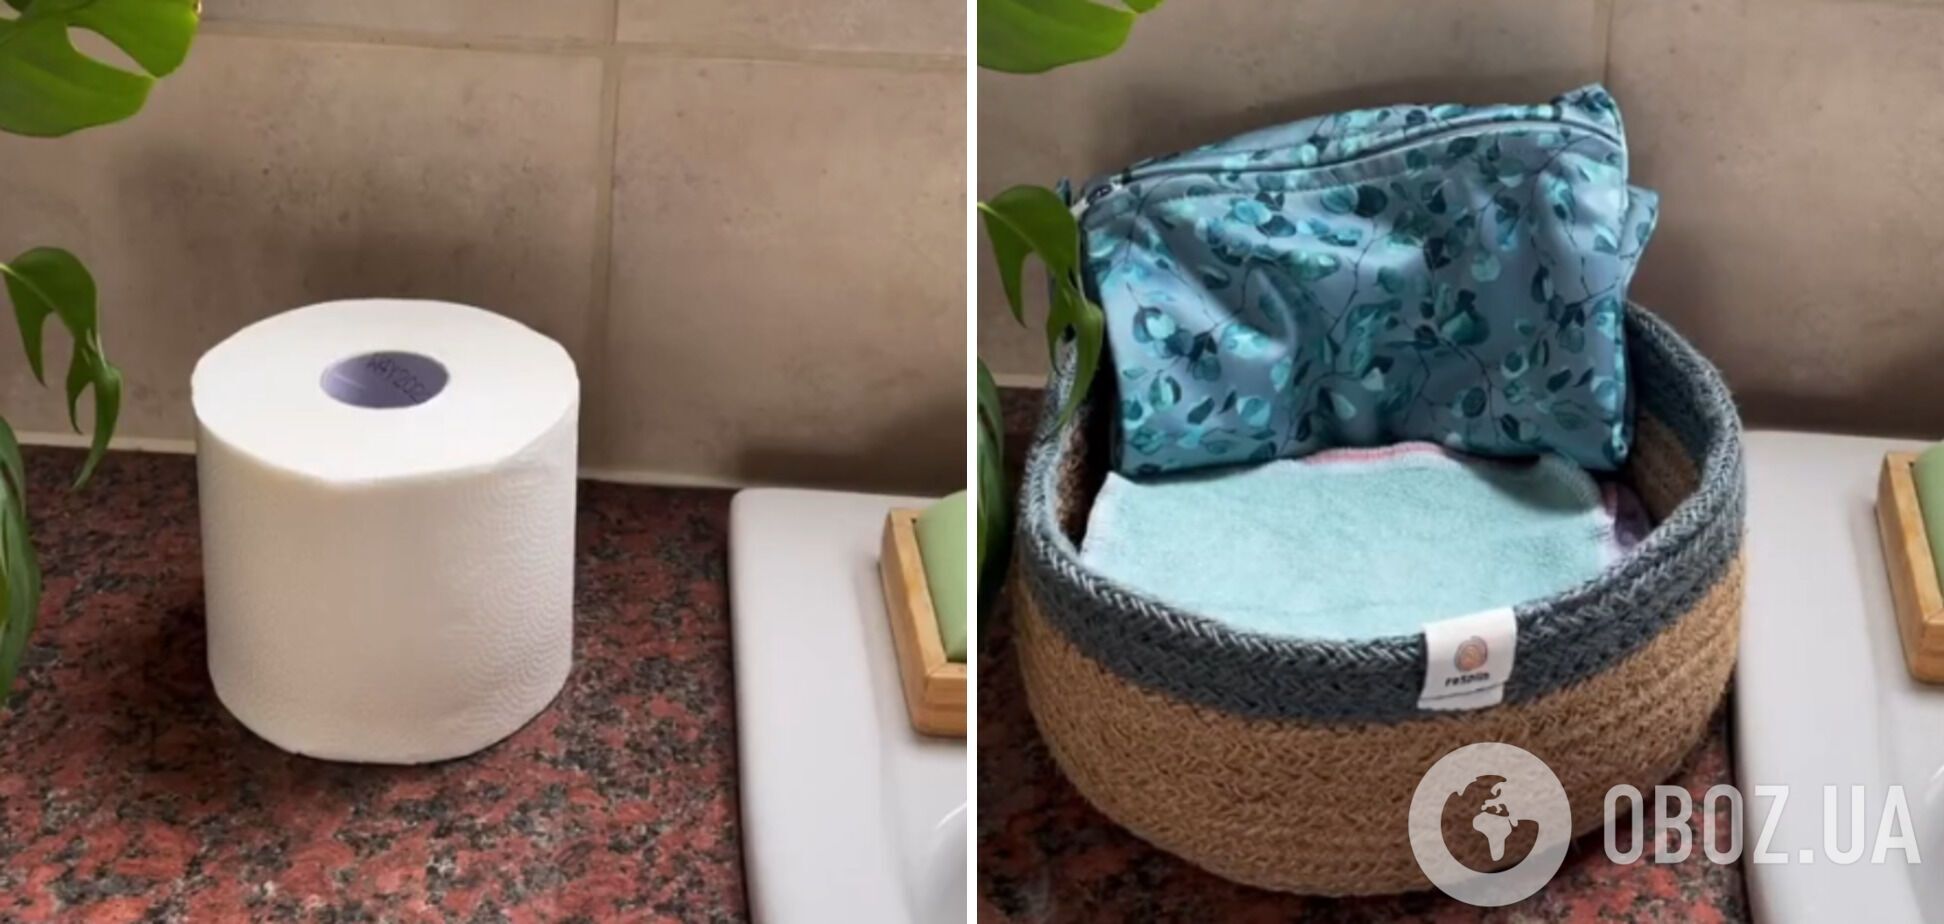 Семья сэкономила почти 100 долларов, отказавшись от туалетной бумаги: что они придумали. Видео